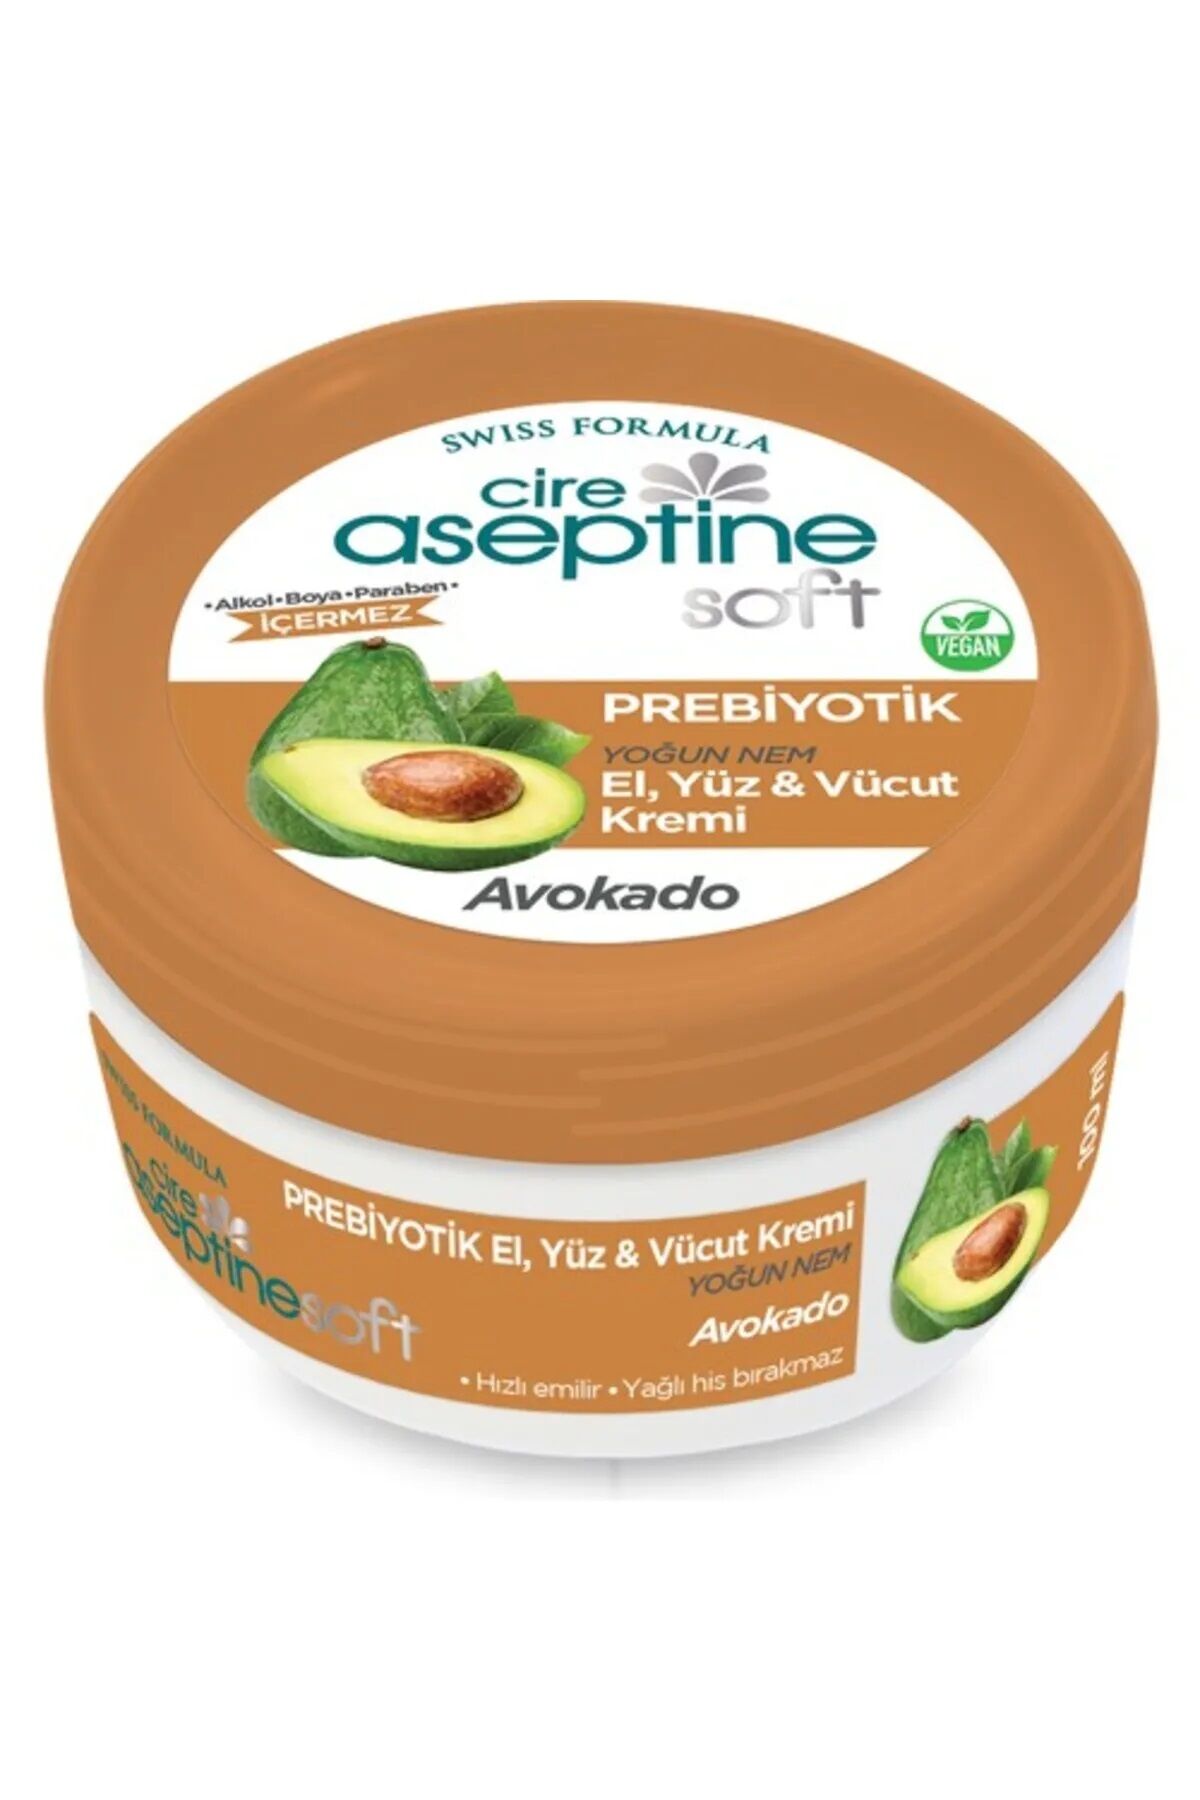 Cire Aseptine Soft Avokado Özlü Yoğun Nemlendirici Prebiyotikli Krem 100 ml